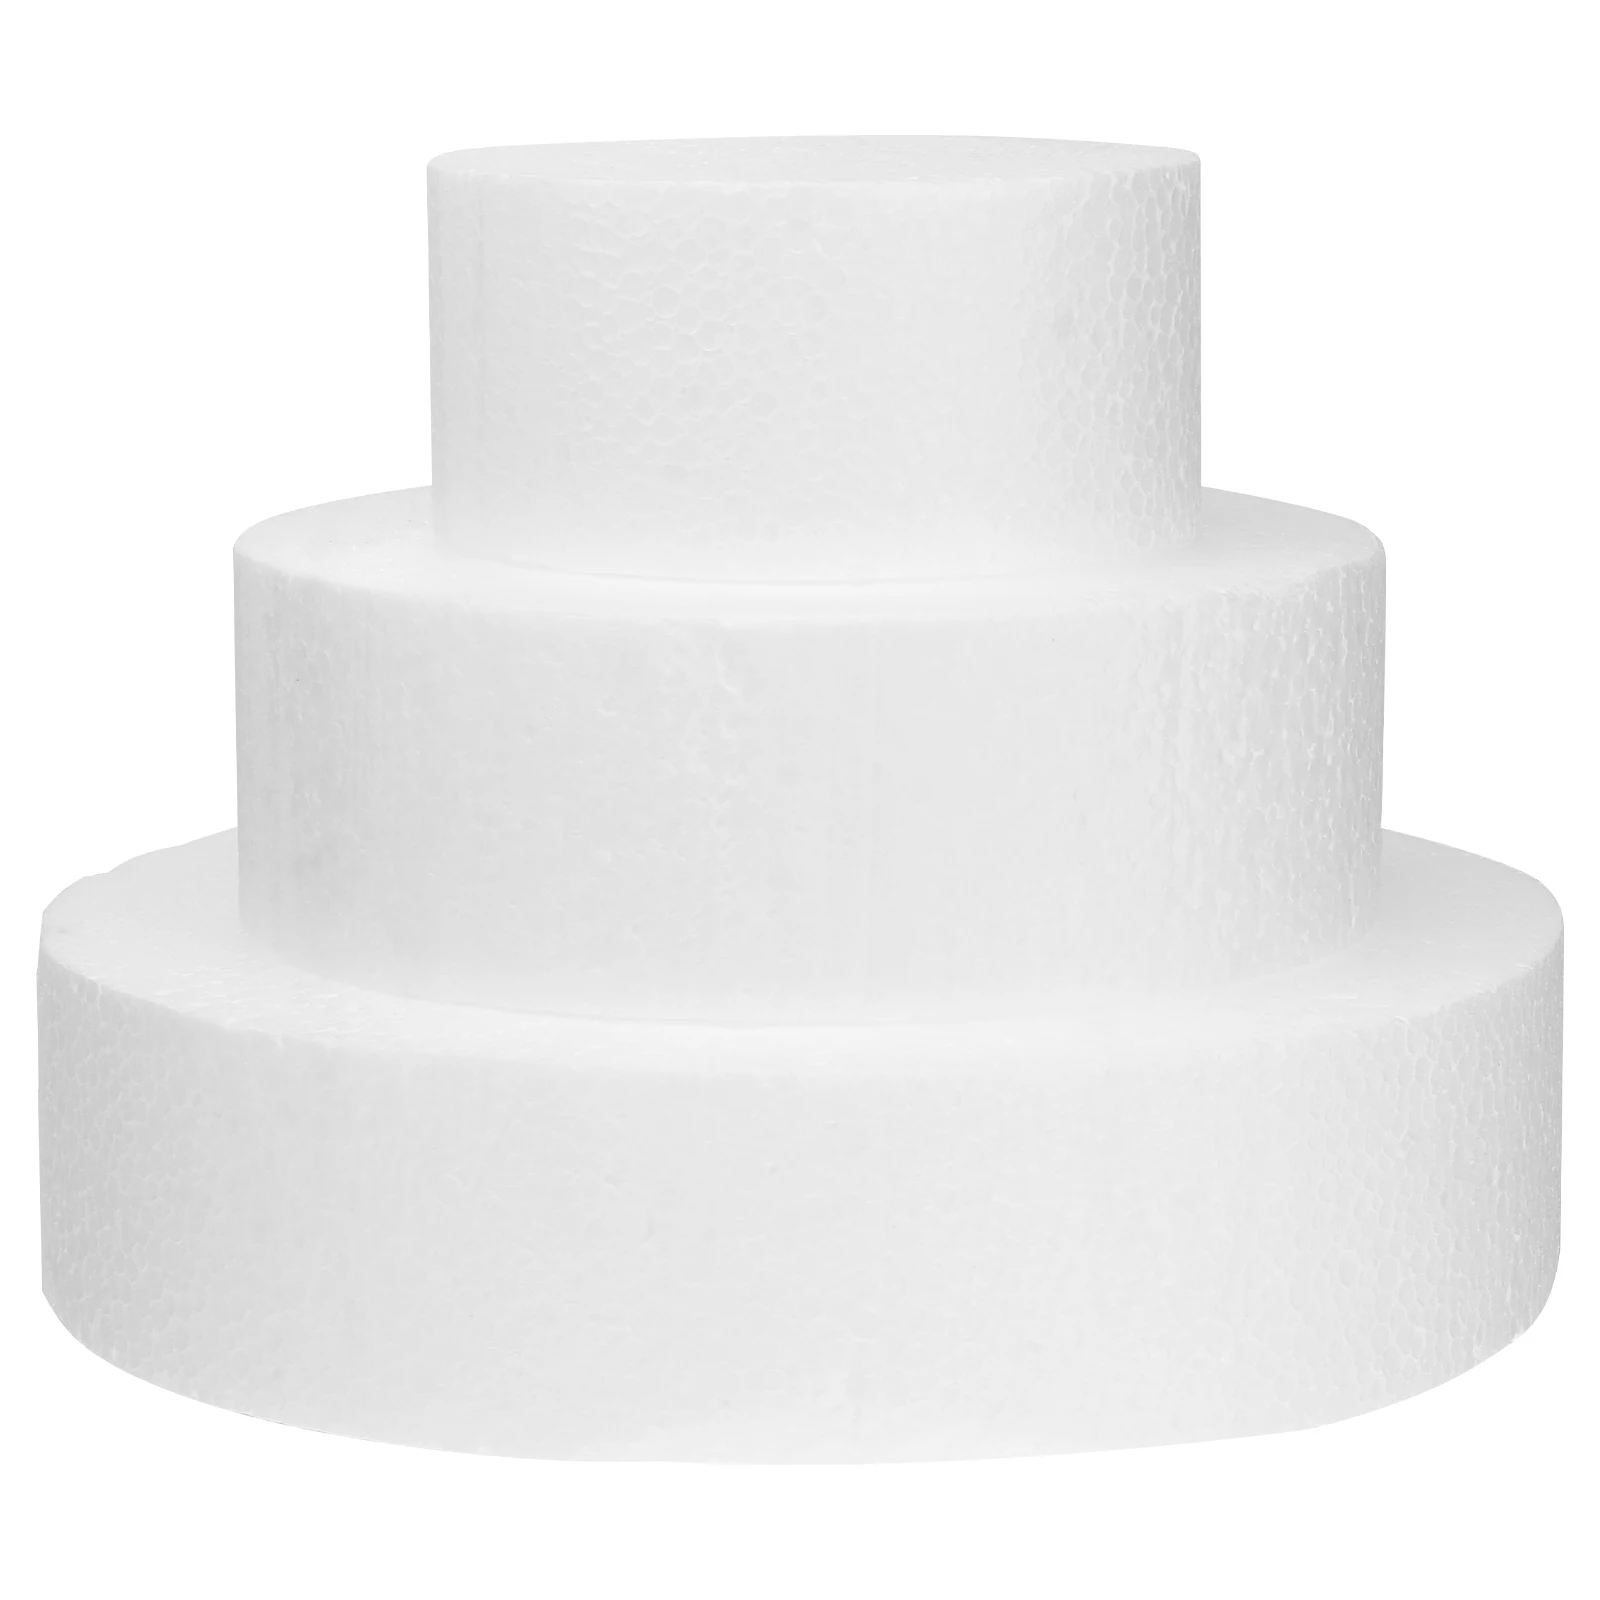 

Cake Foam Dummy Dummies Round Fake Molds Styrofoam Set Polystyrene Wedding Practice Rounds Decorating Model Baking Mold Circle